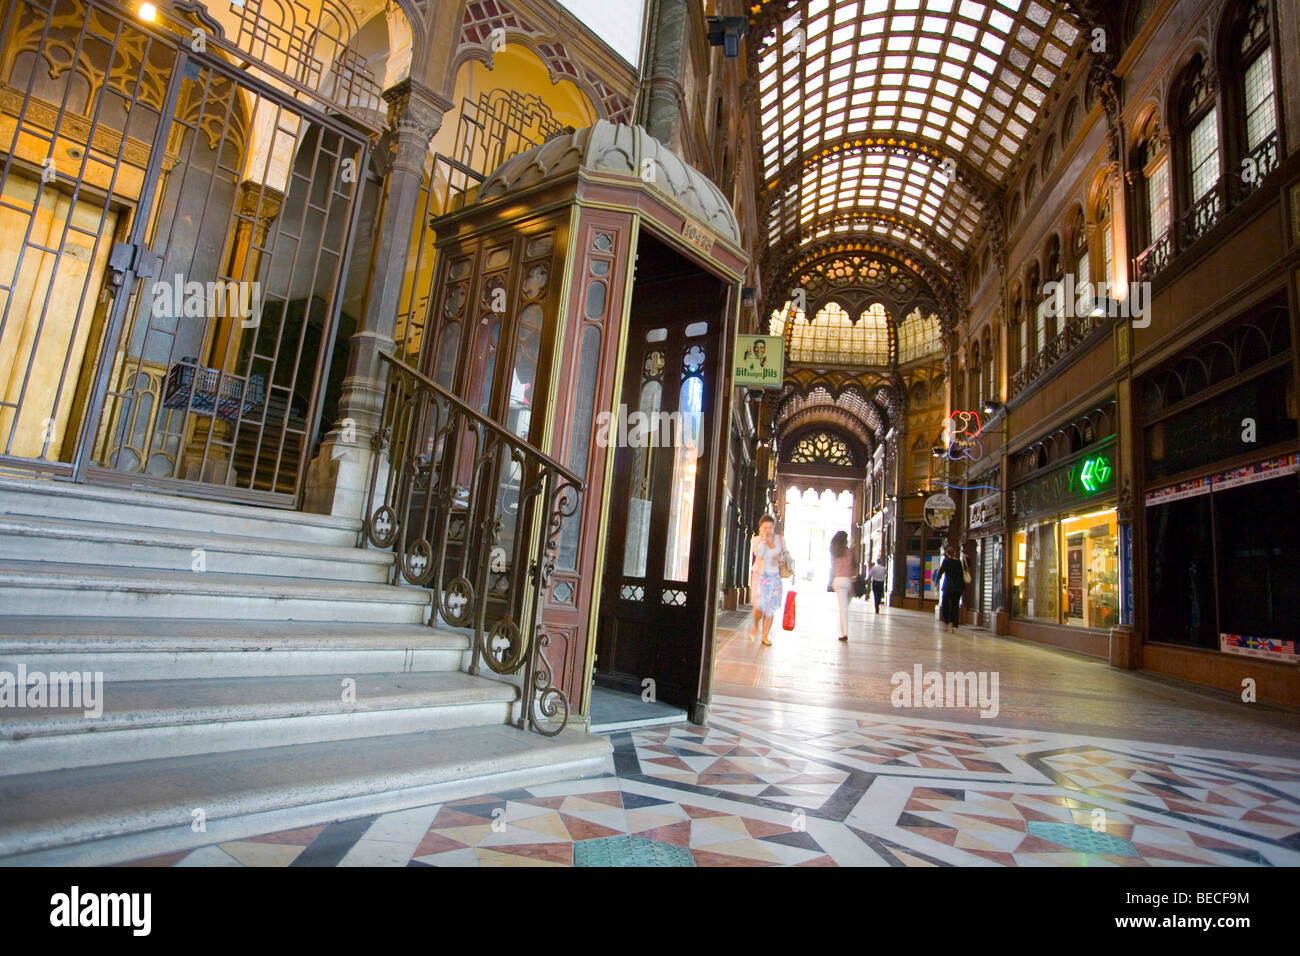 Historic shopping arcade, Parisi udvar, Budapest, Hungary, Eastern Europe Stock Photo